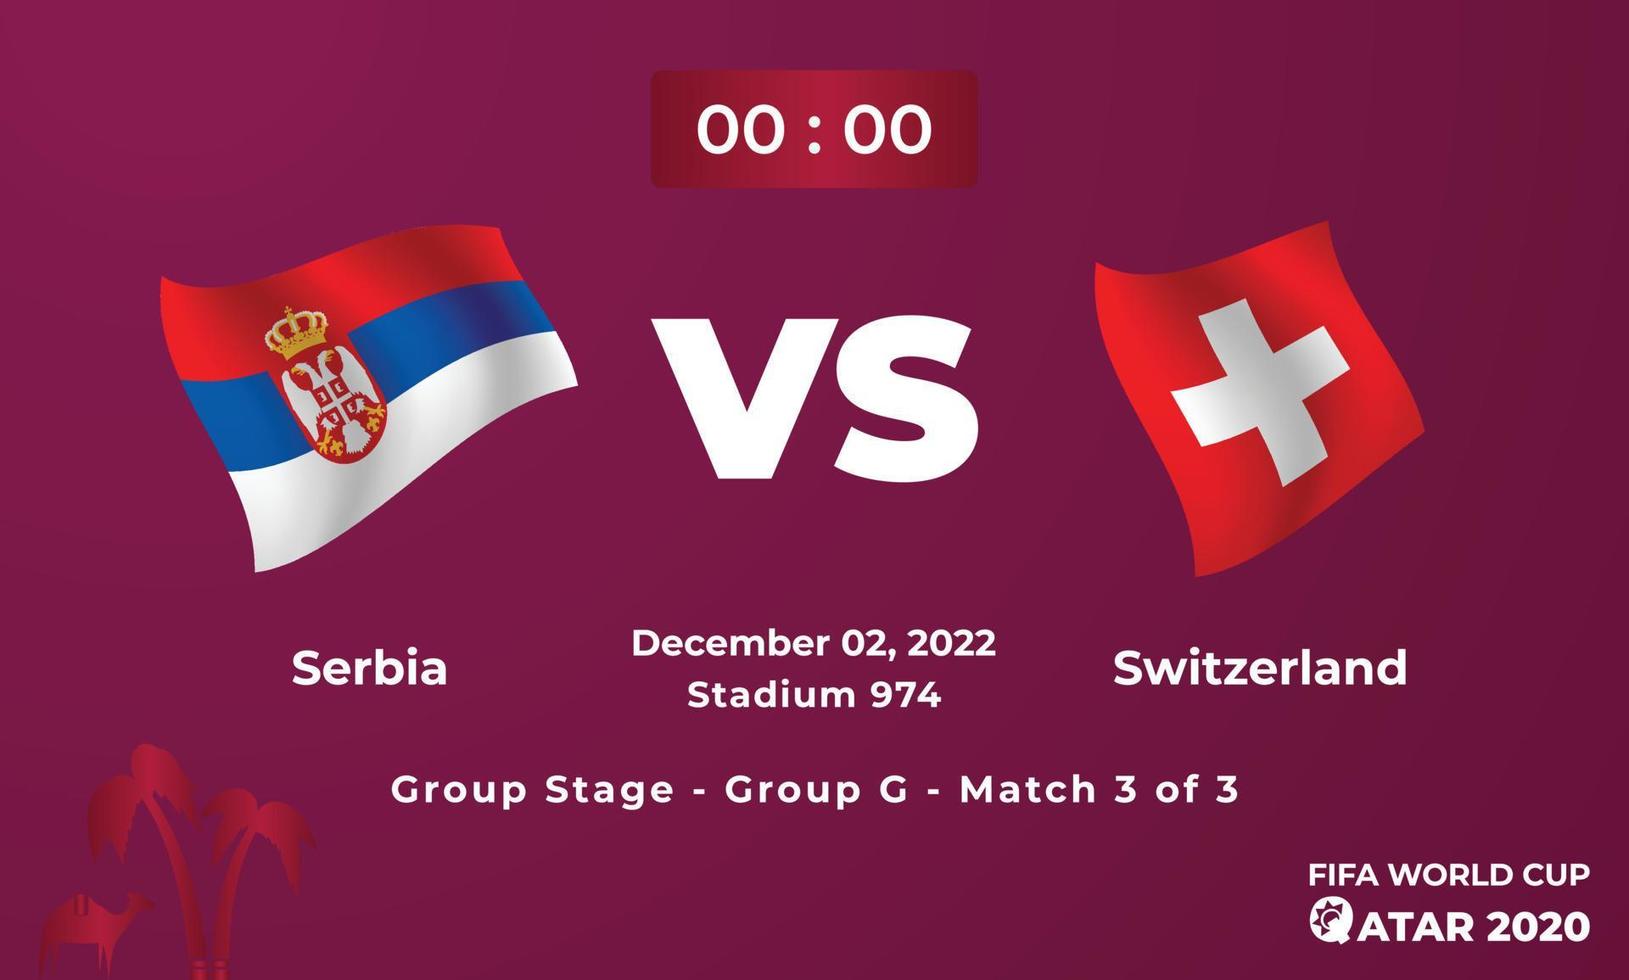 serbia mot schweiz fotboll matchmall, fifa värld kopp i qatar 2022 vektor